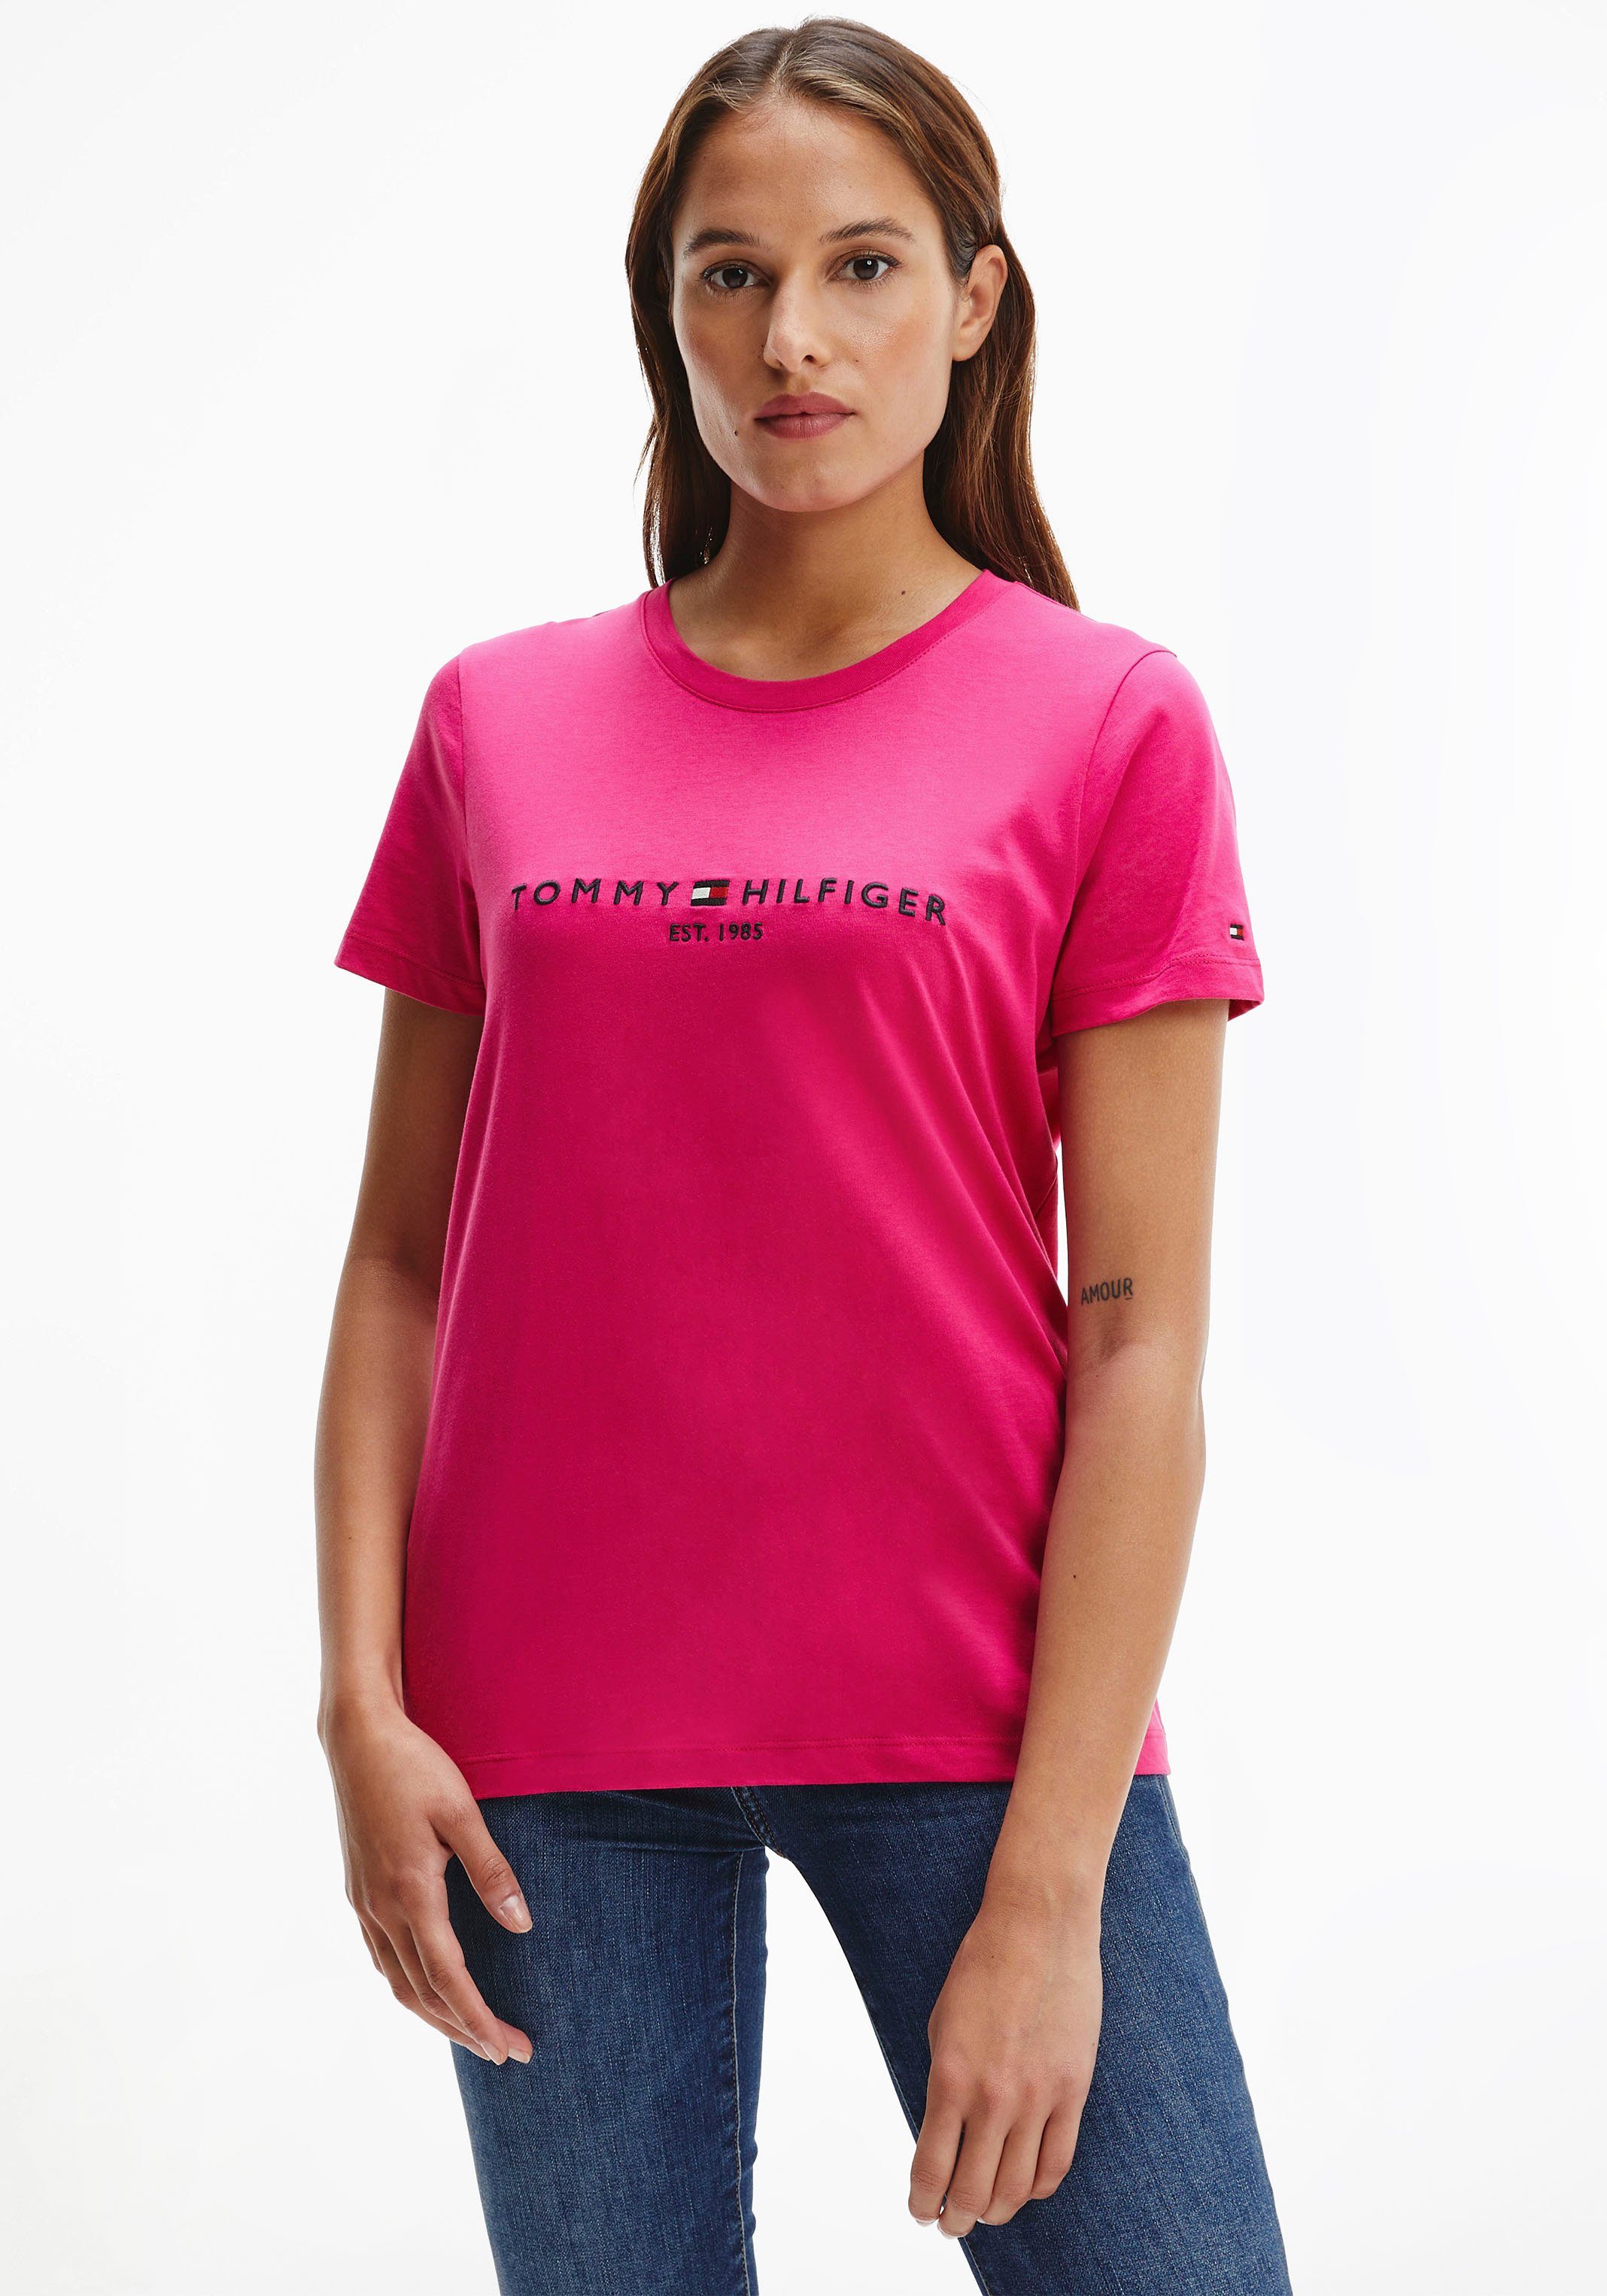 Tommy Hilfiger Shirts online kaufen | OTTO